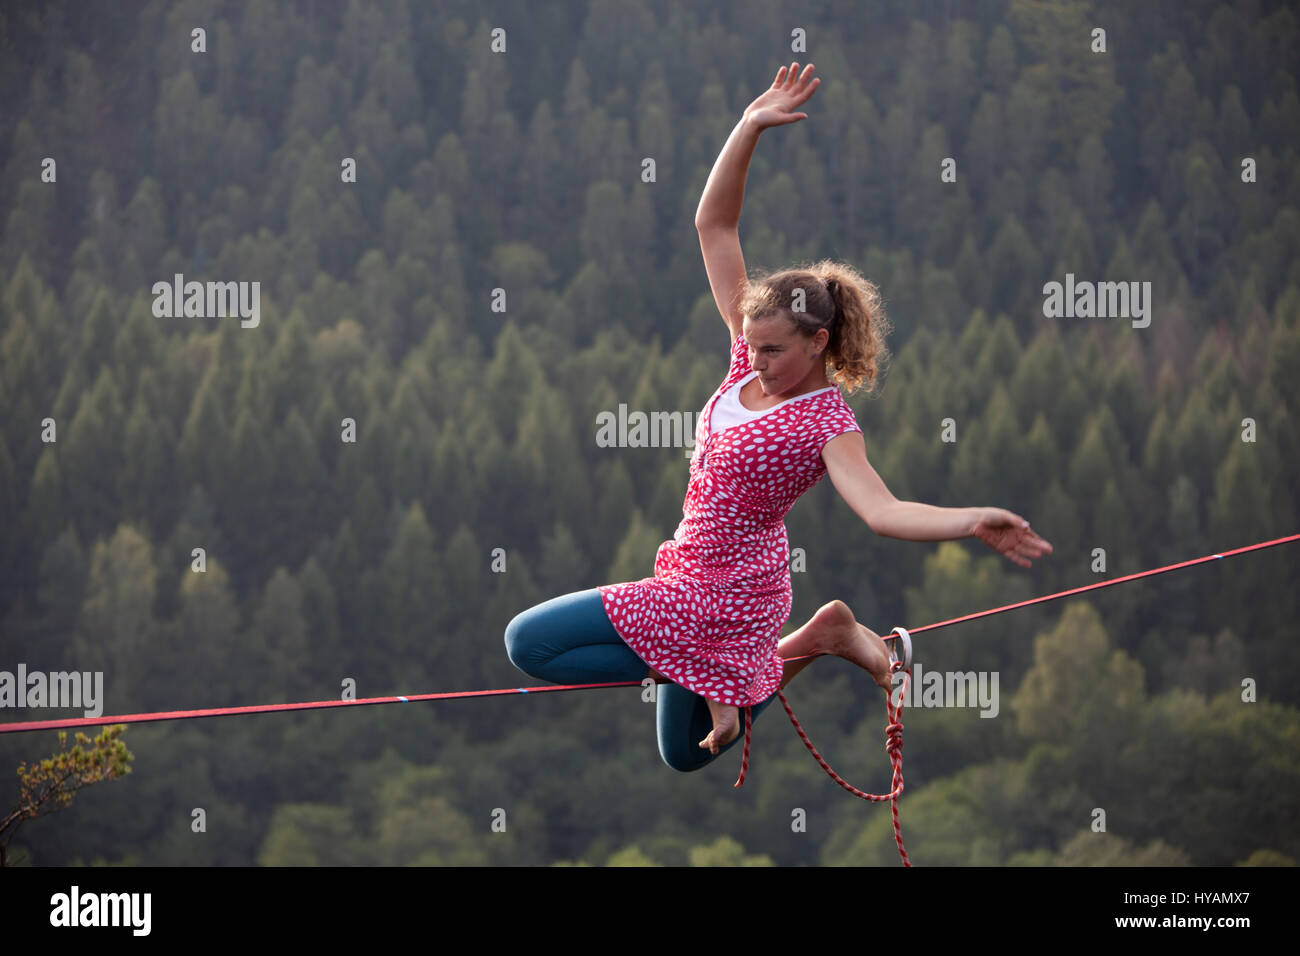 OSTROV, Tschechien: ein weiblicher Slackliner zeigt auf dem Hochseil. VON  Verkleidung Kostüm Verleih-Draht Yoga zeigen diese Mädchen-Bande der  leichteren Seite für den extremen Sport Slacklinen nennen. Gekleidet wie  ein 40er Jahre "Land